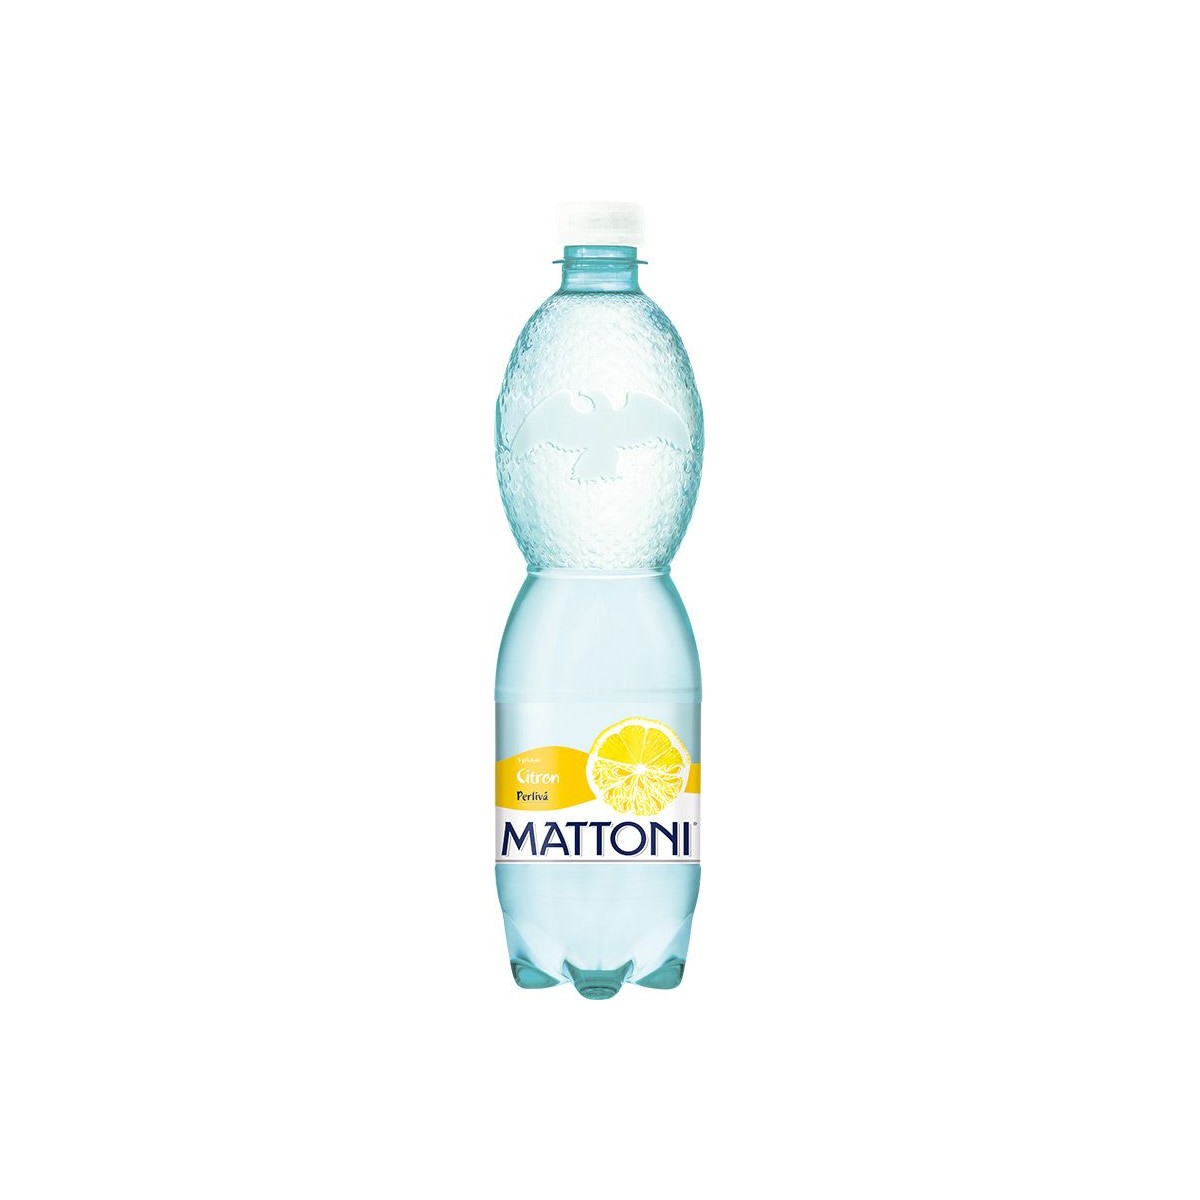 Mattoni citron 0,75l - PET